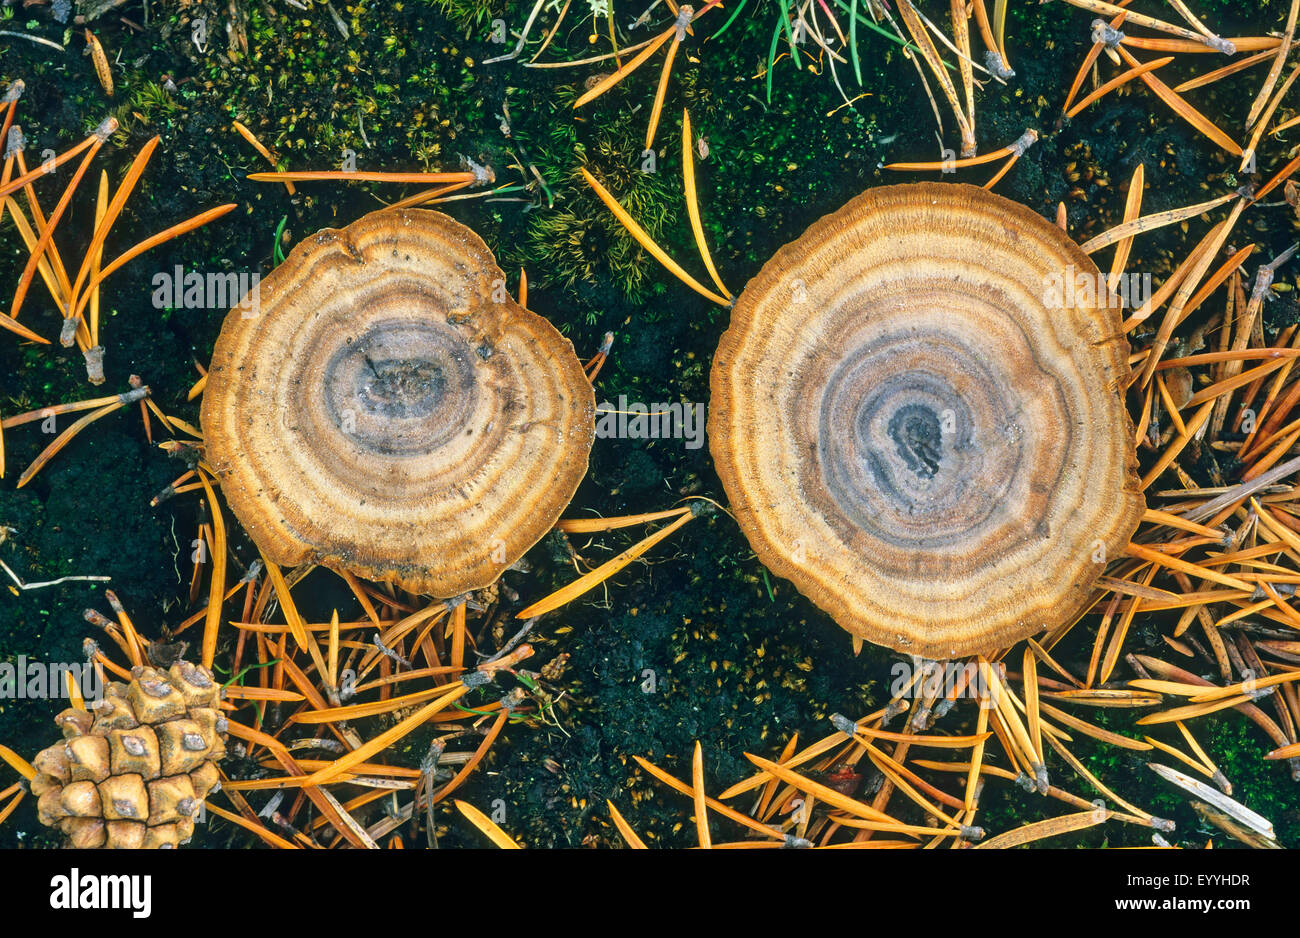 Tigerauge (Coltricia Perennis), zwei Fruchtkörper Körper auf moosigen Wald, Boden, Ansicht von oben, Deutschland Stockfoto